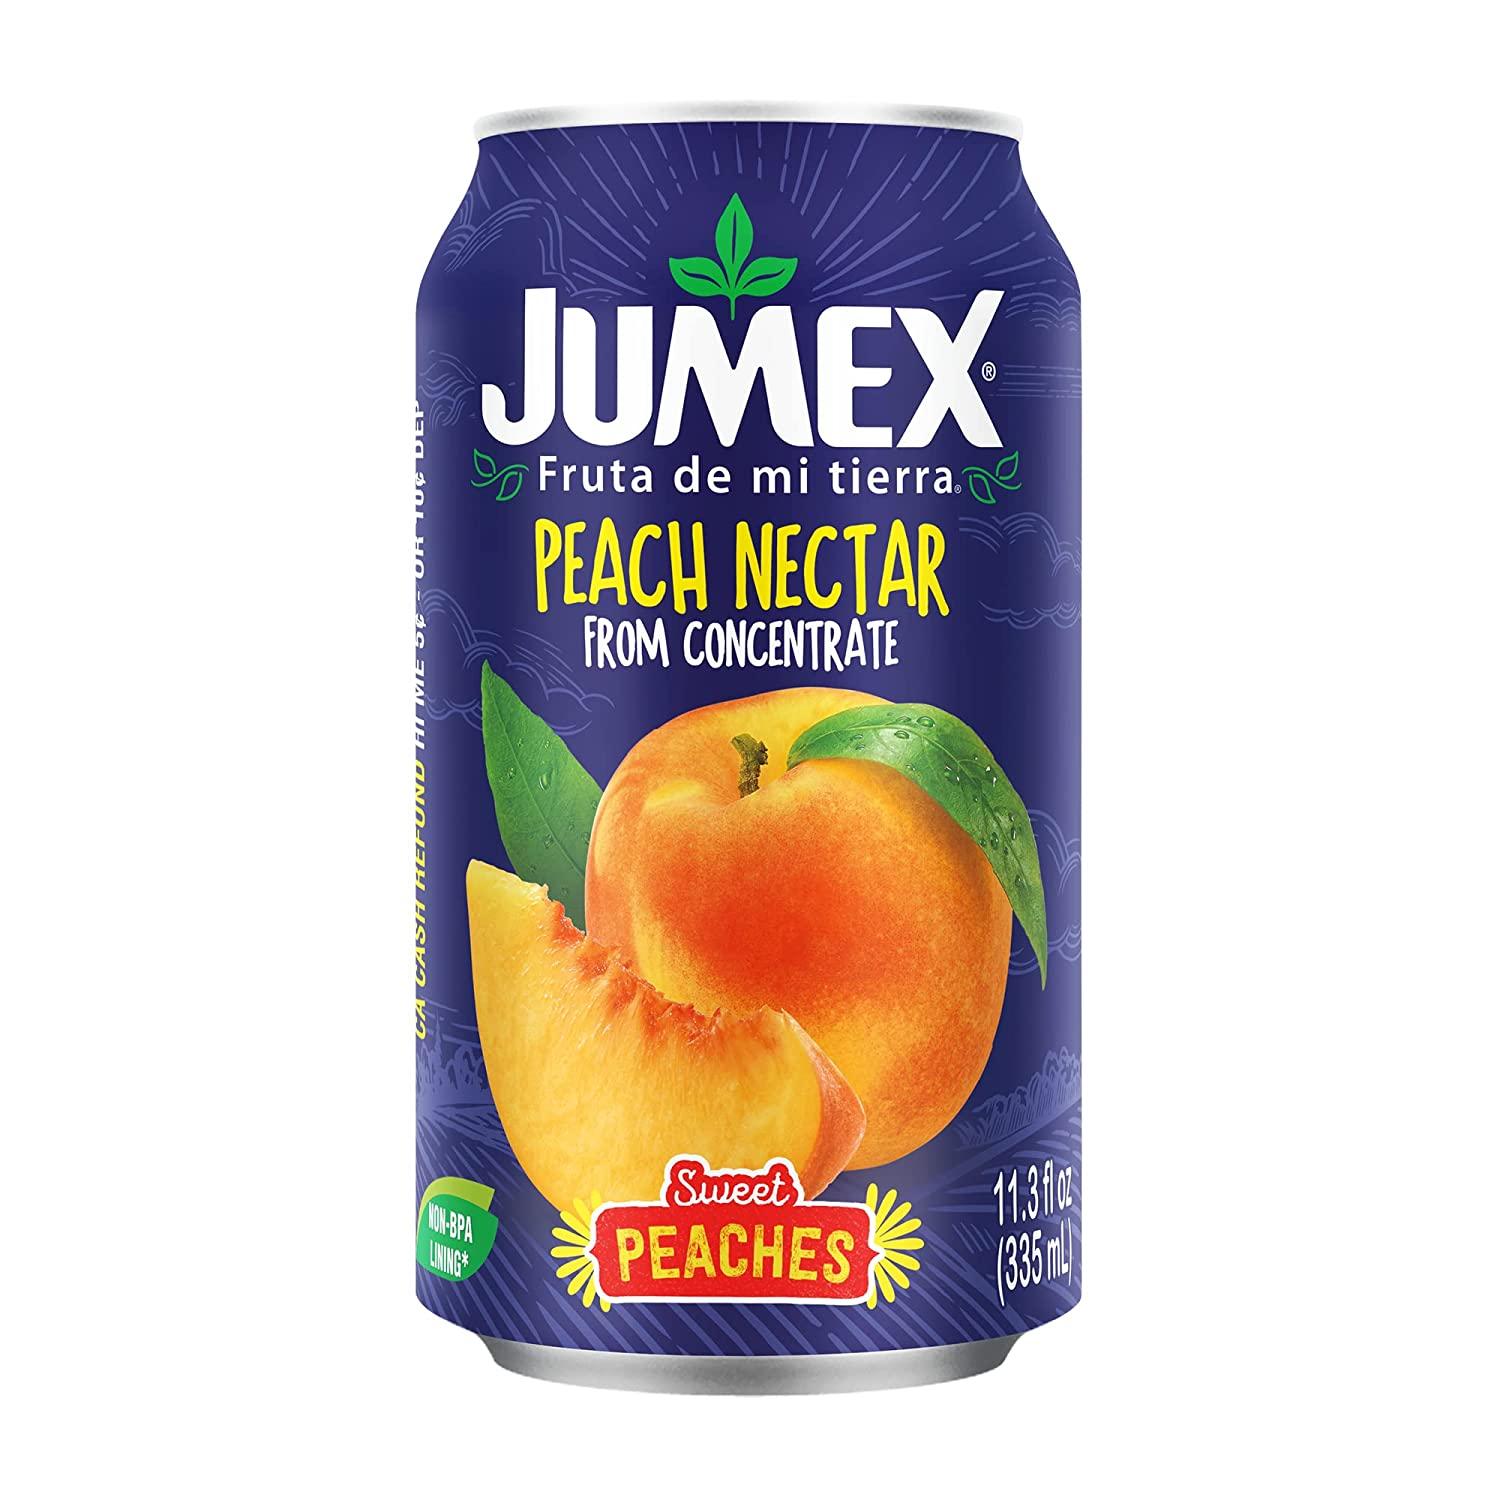 Jumex Nectar Peach for $0.50 Shipped